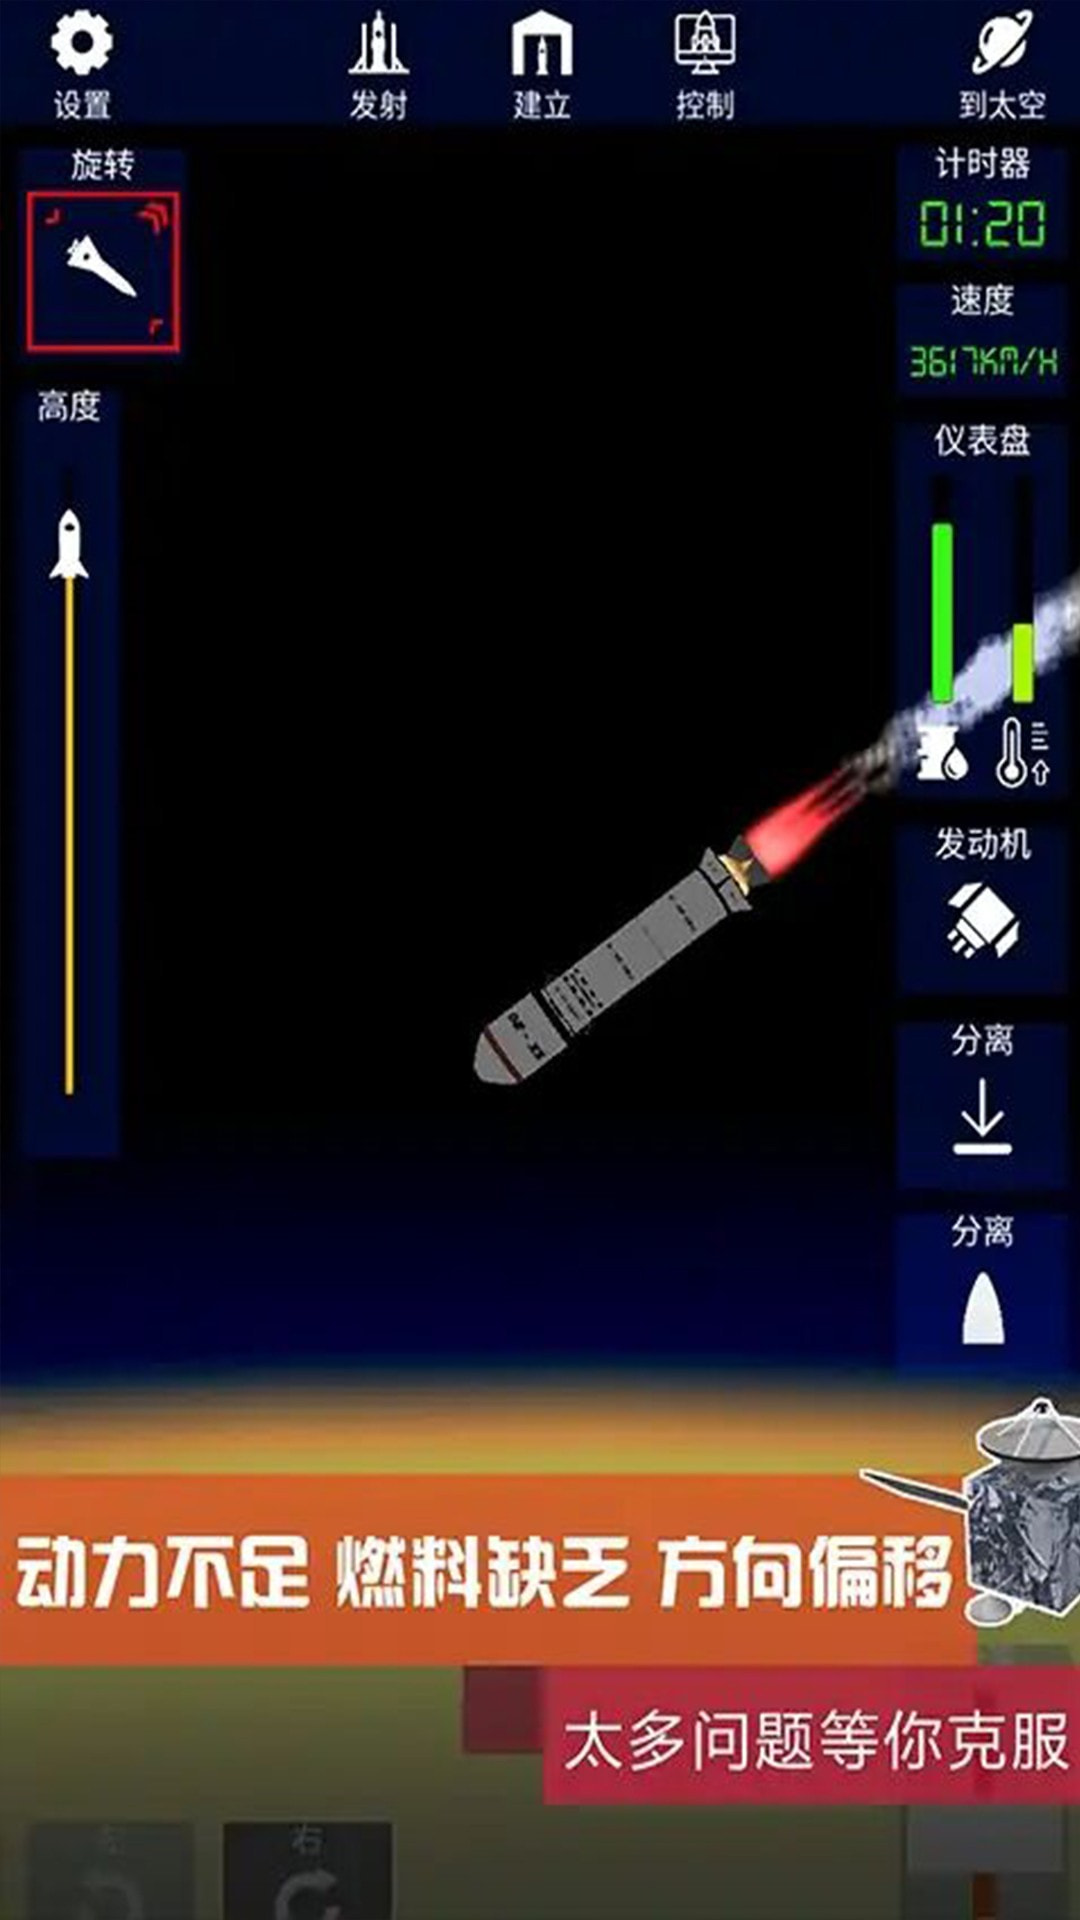 火箭发射模拟器截图2